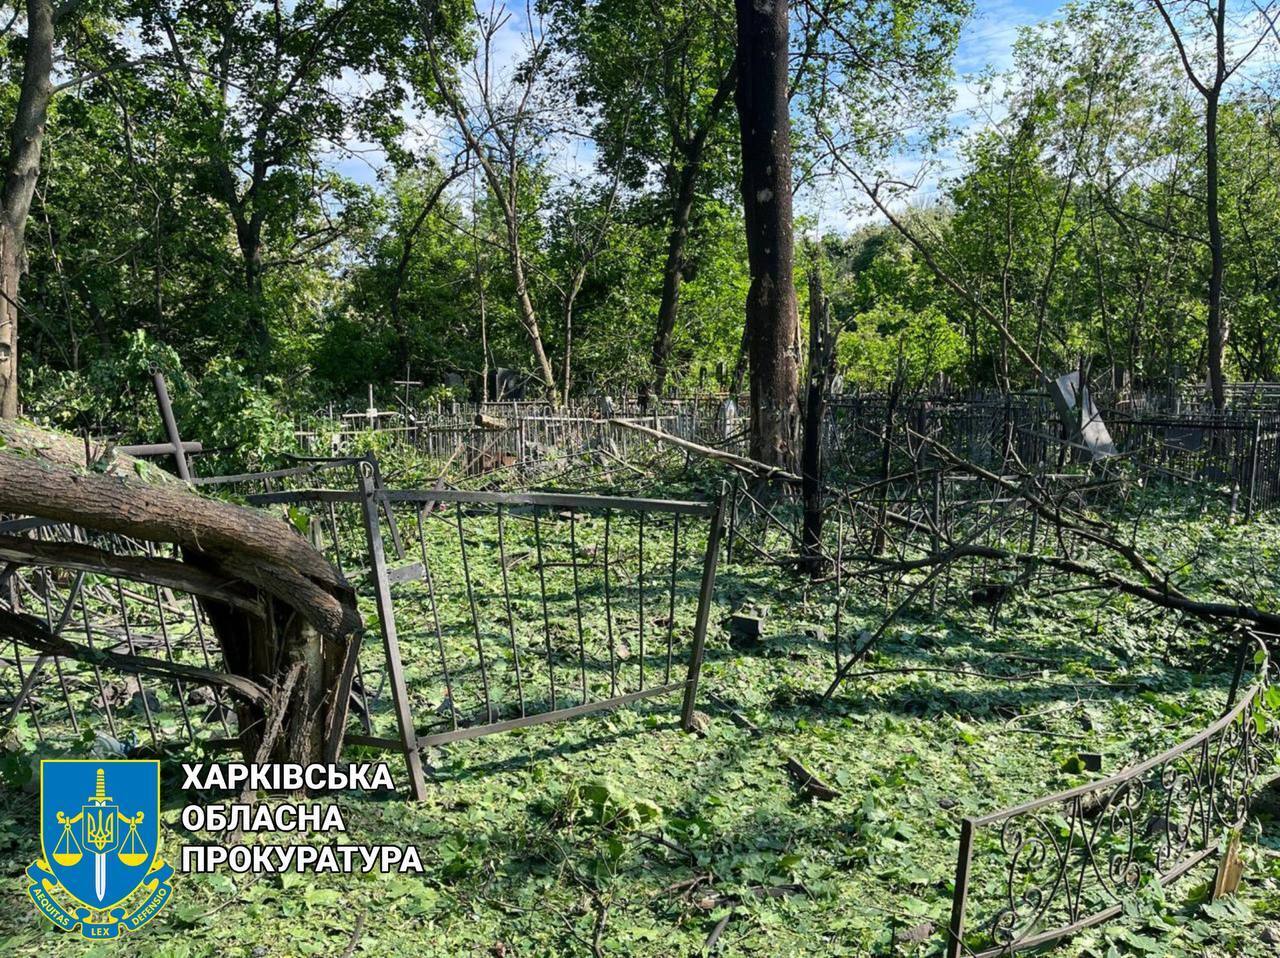 Харьков снова попал под вражеские удары: оккупанты били по кладбищу и парку